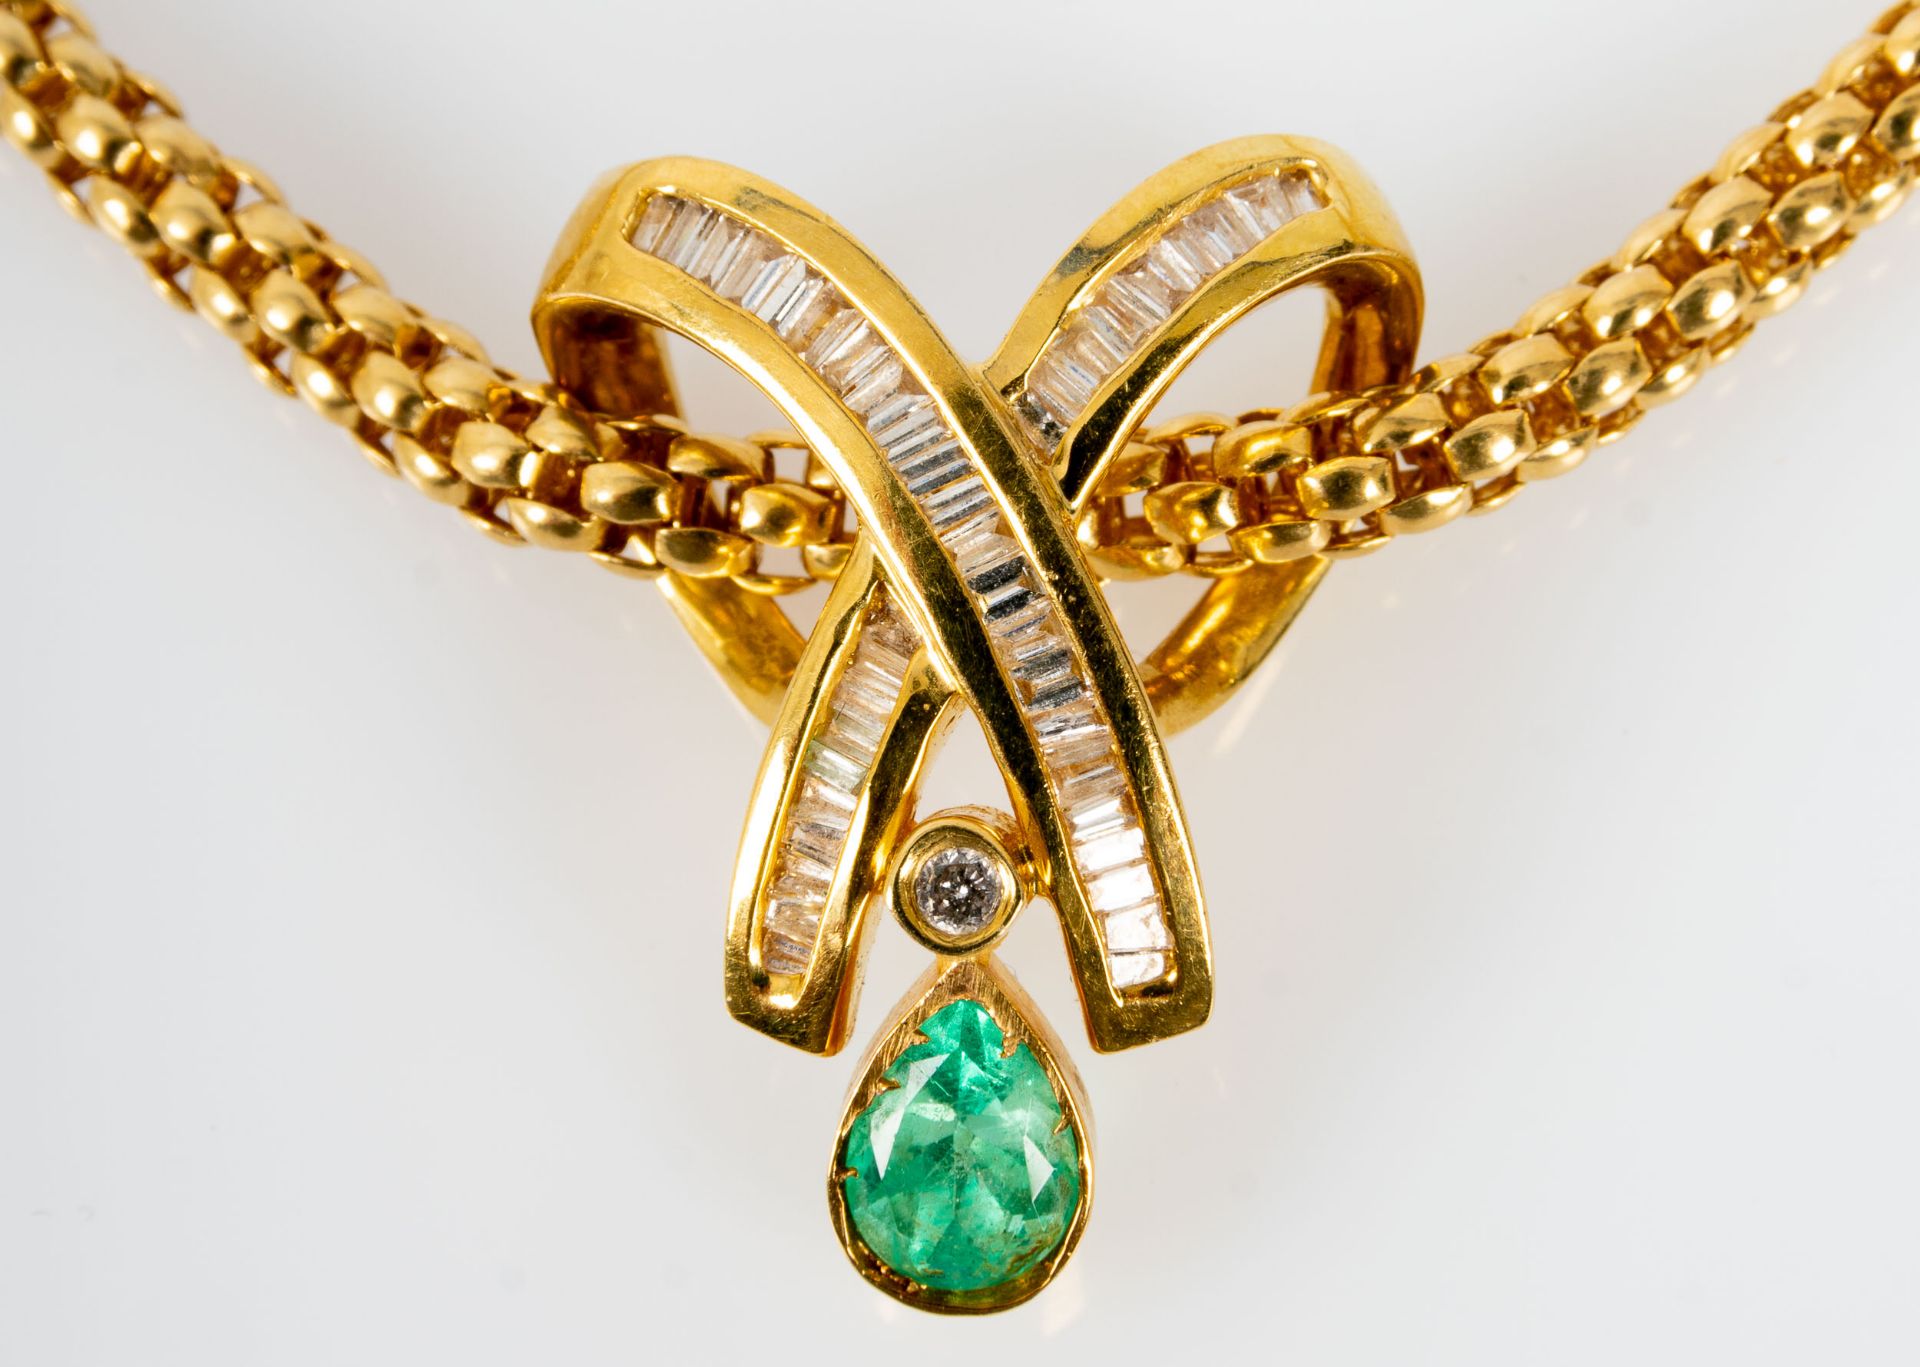 Prächtiges Smaragd-Brillant-Collier, bewegliche, ca. 46 cm lange tauförmige Halskette mit einer Bre